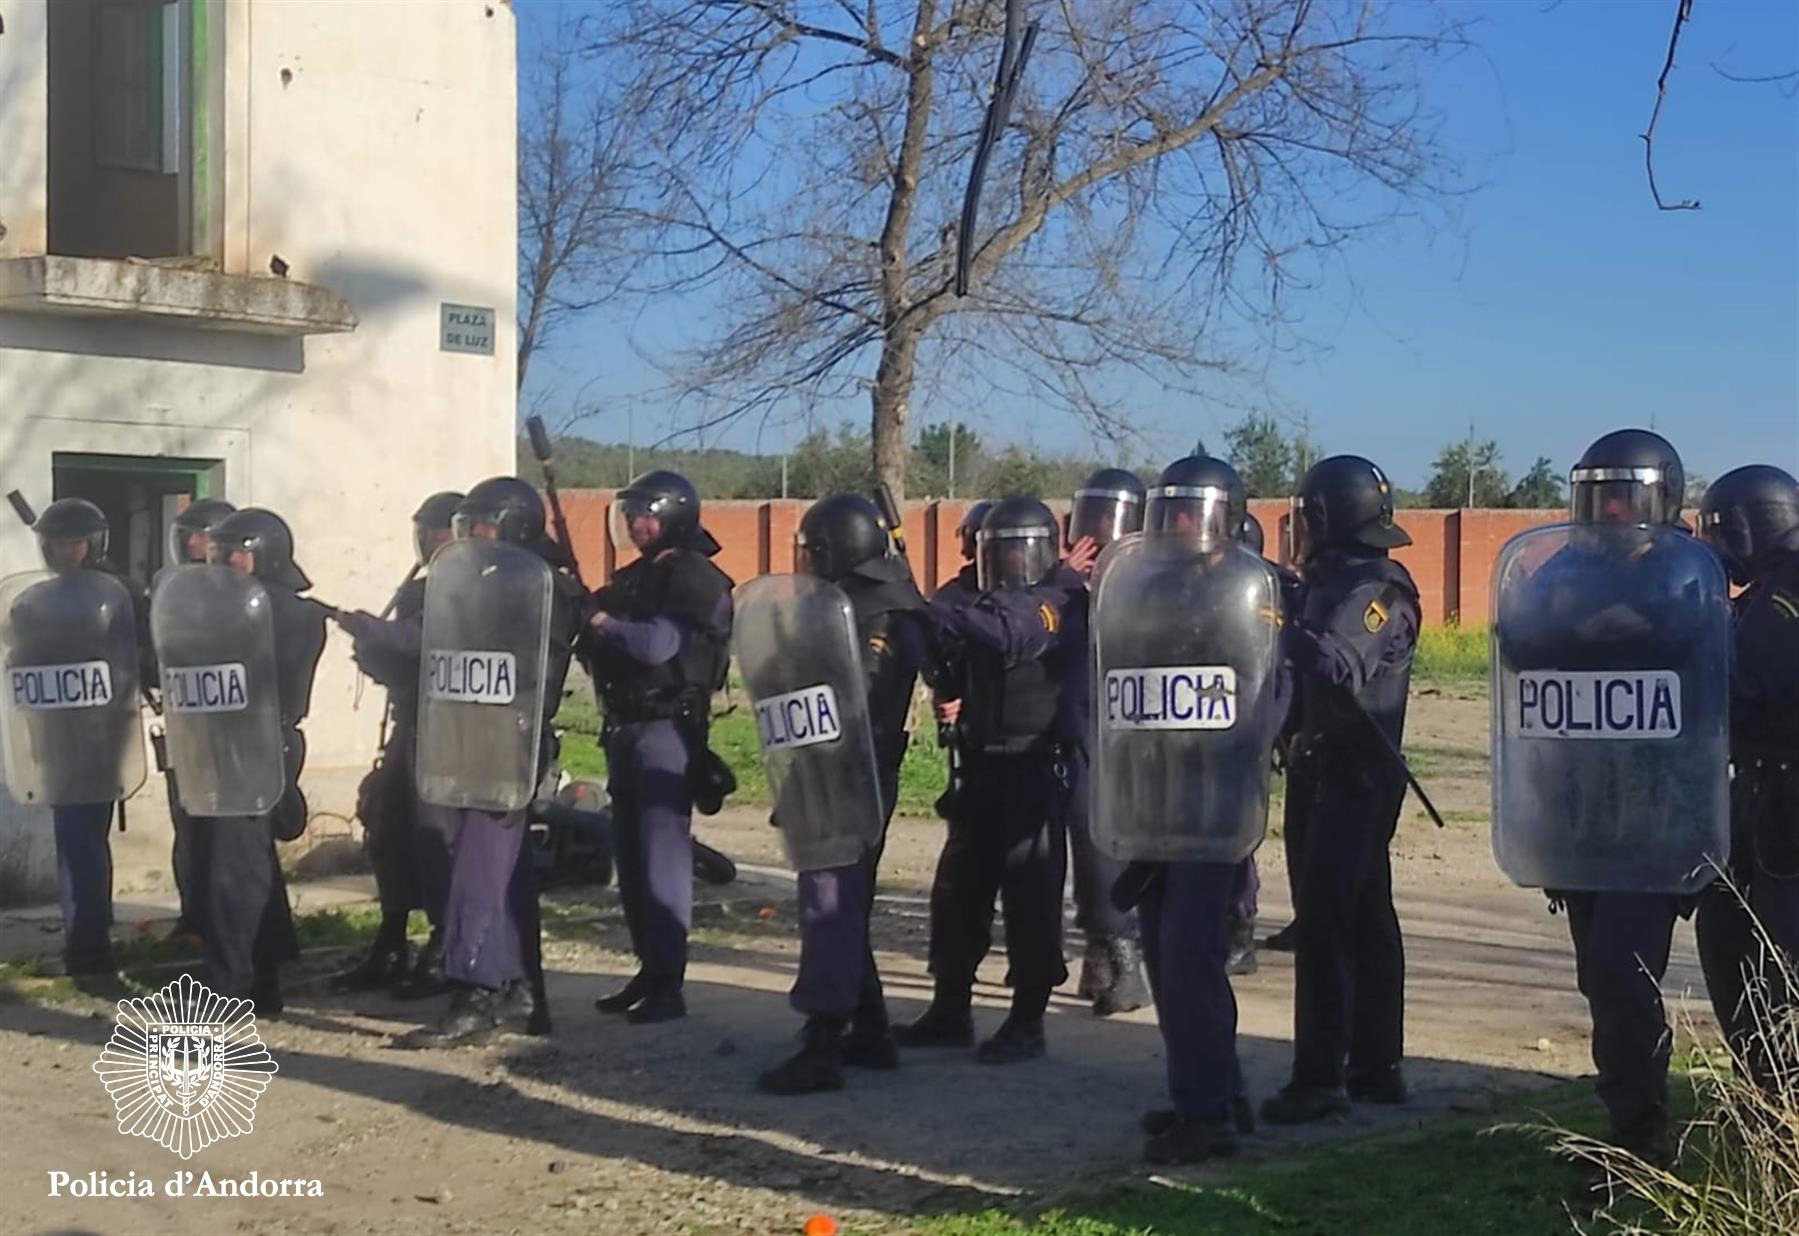 Agents de Seguretat Ciutadana reforcen la formació en dispositius d’ordre públic amb la Policia Nacional espanyola